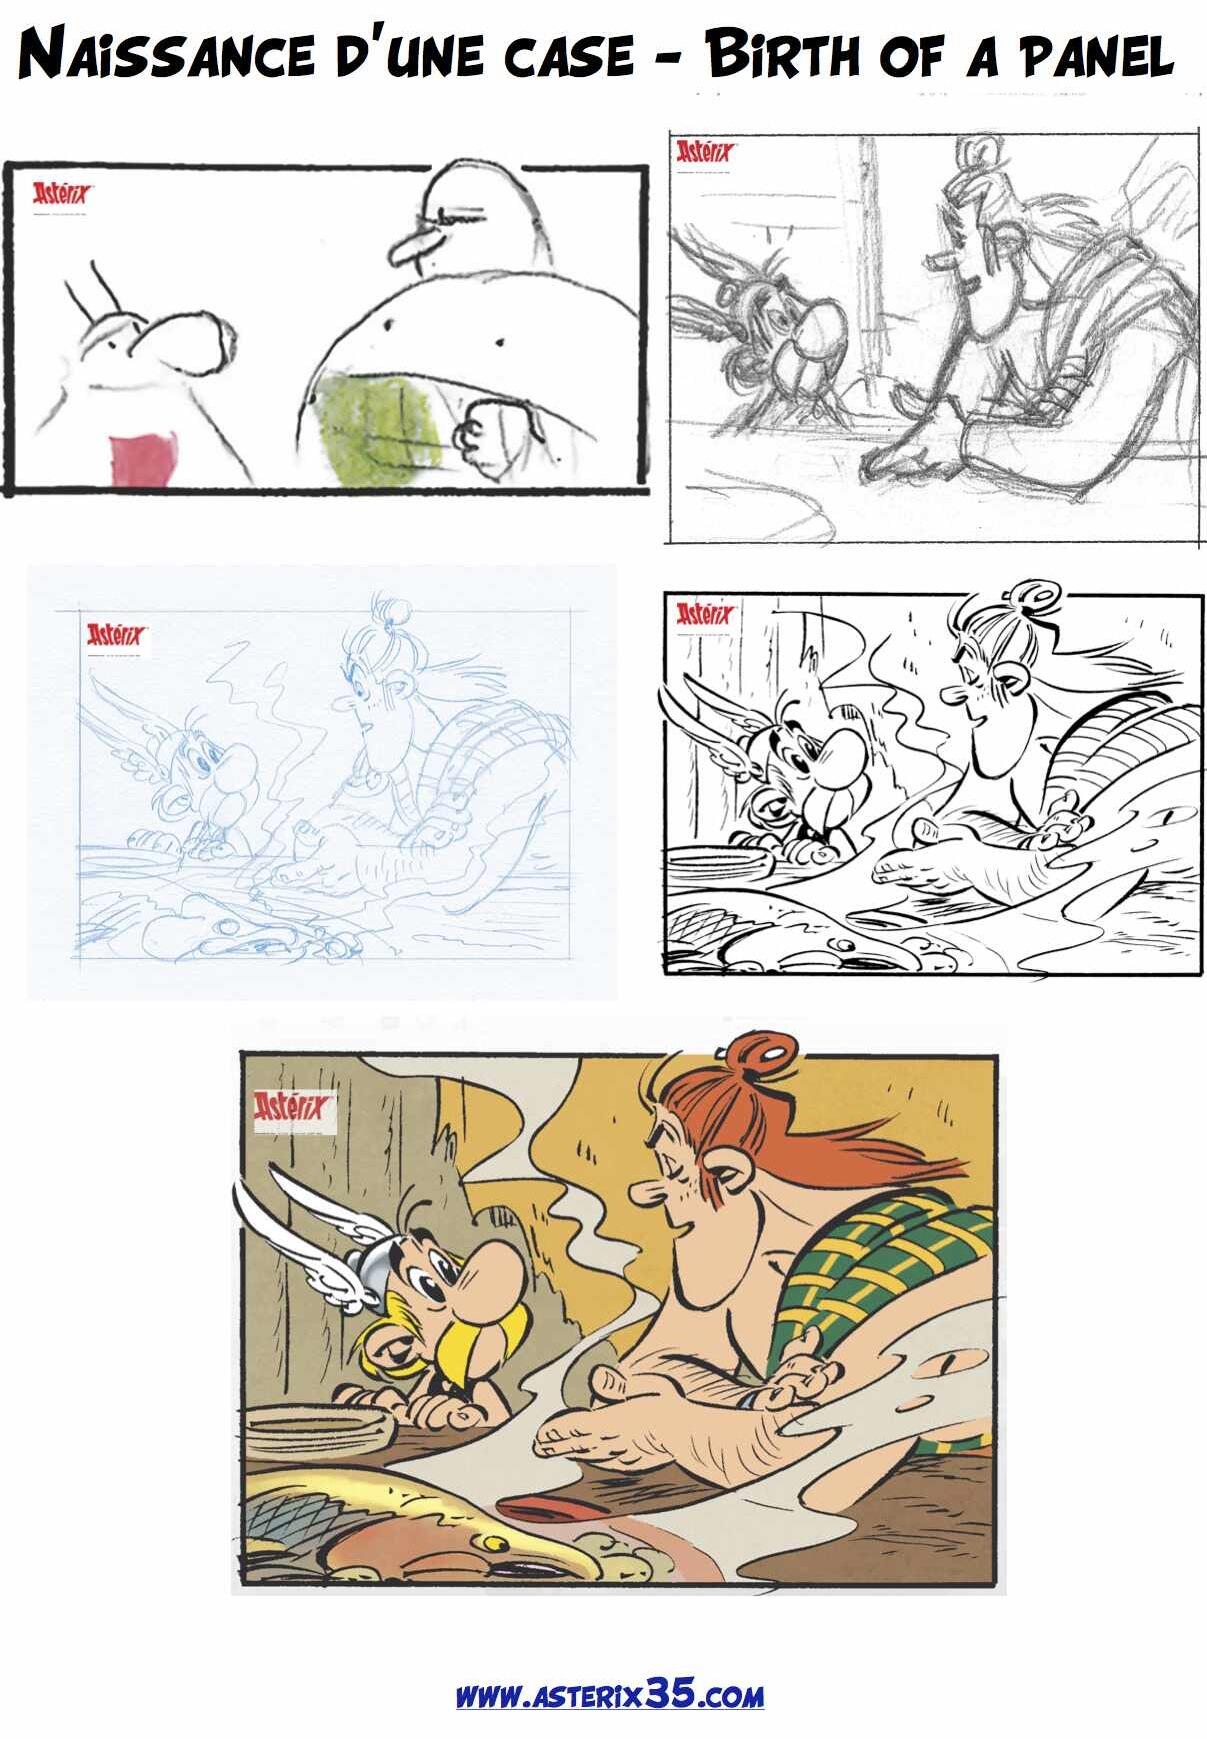 "Astérix chez les Pictes" tome 35 (24 octobre 2013) - Page 11 BWJsRxnIIAIMx9I